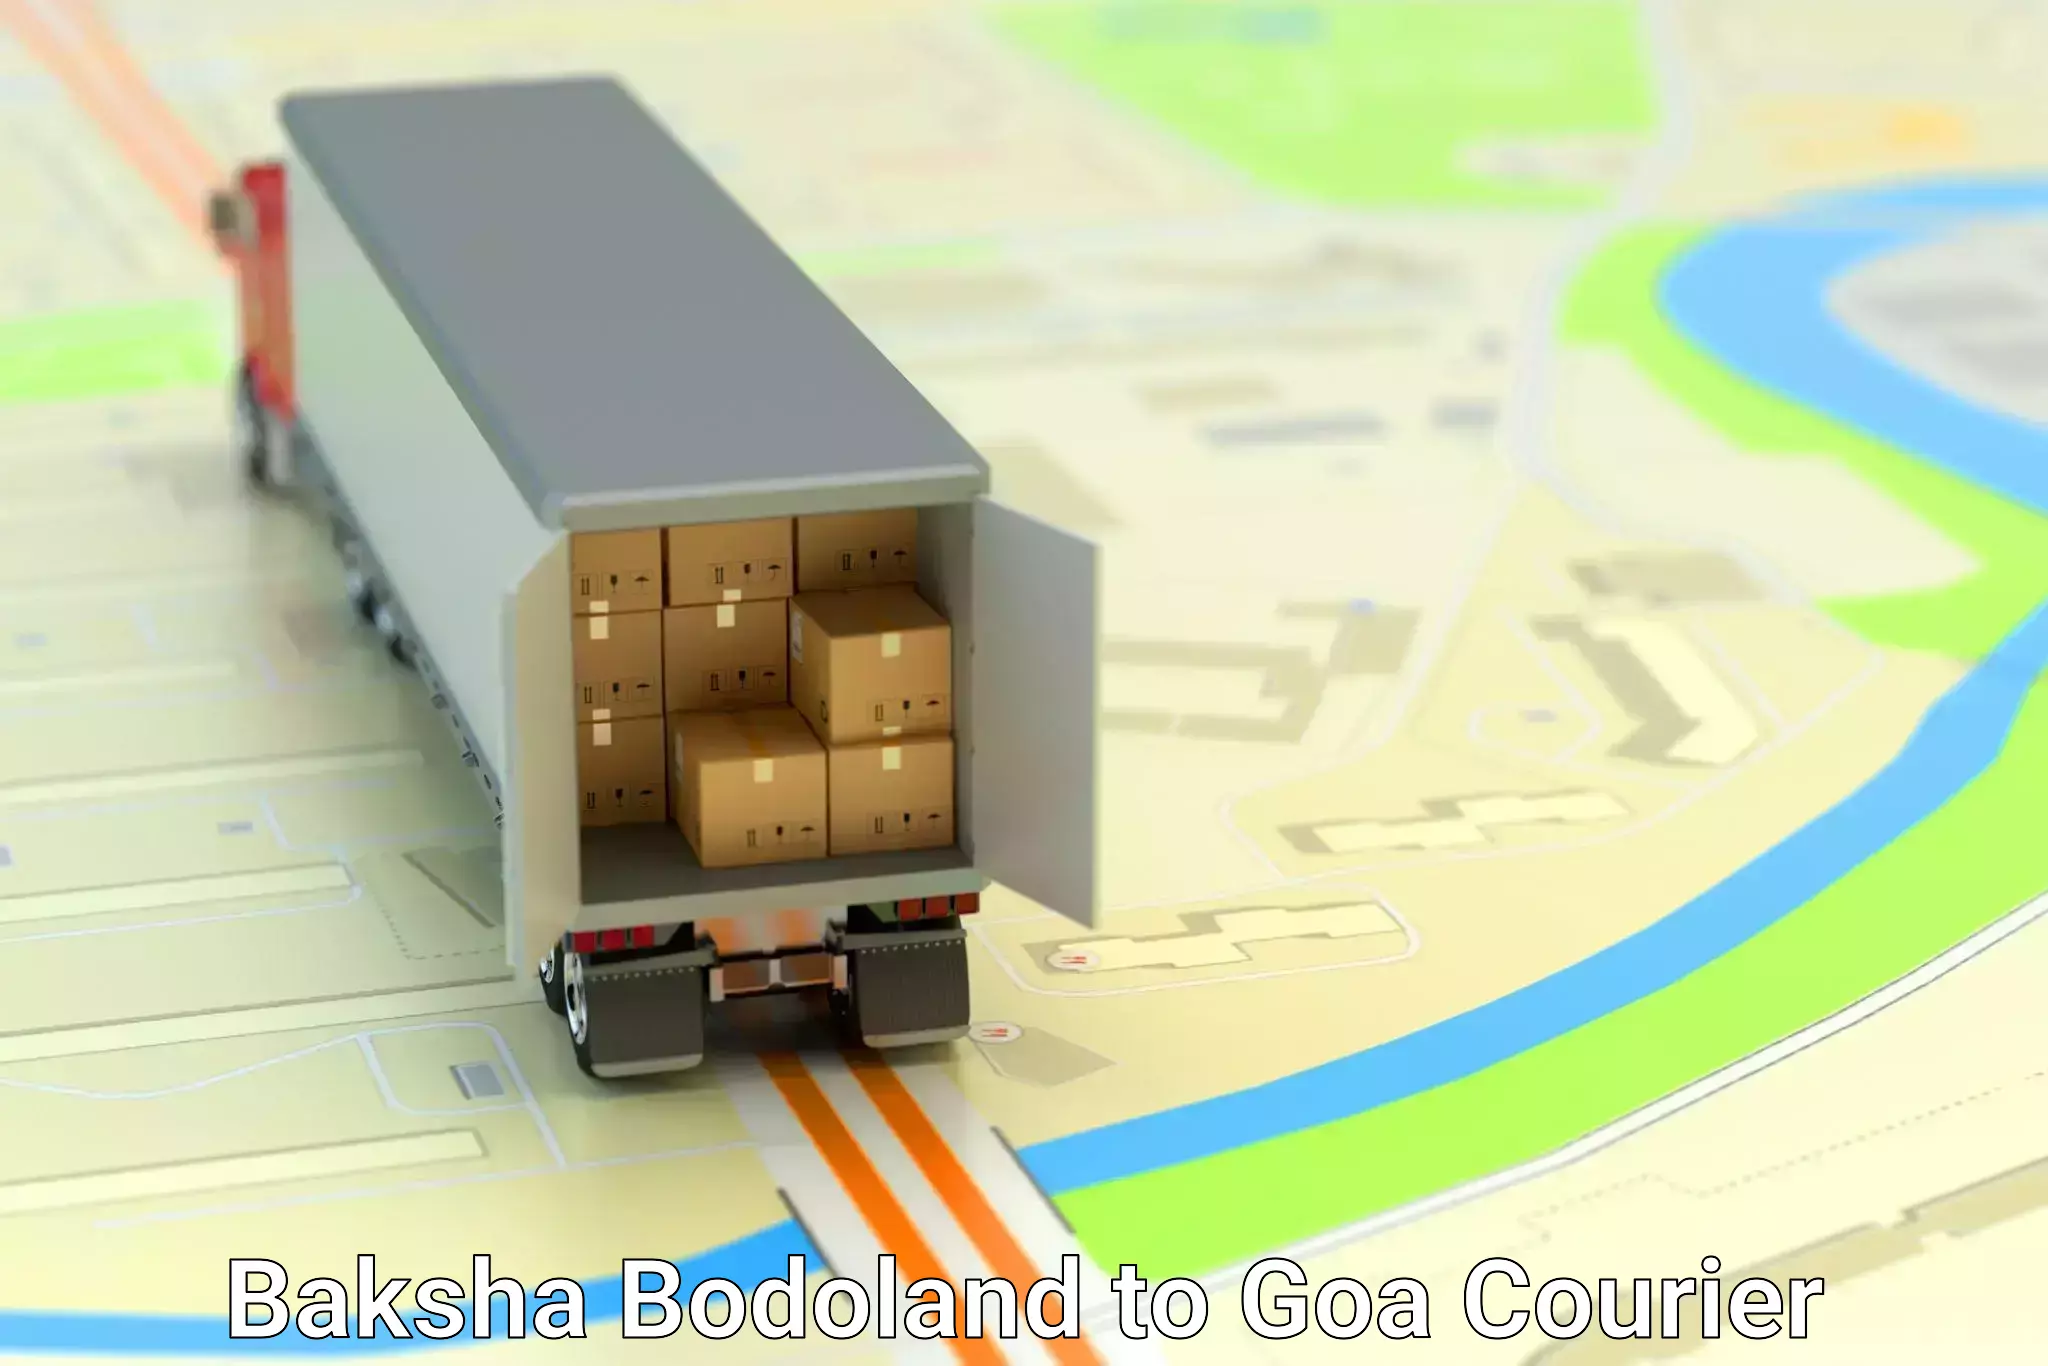 Door-to-door freight service Baksha Bodoland to NIT Goa